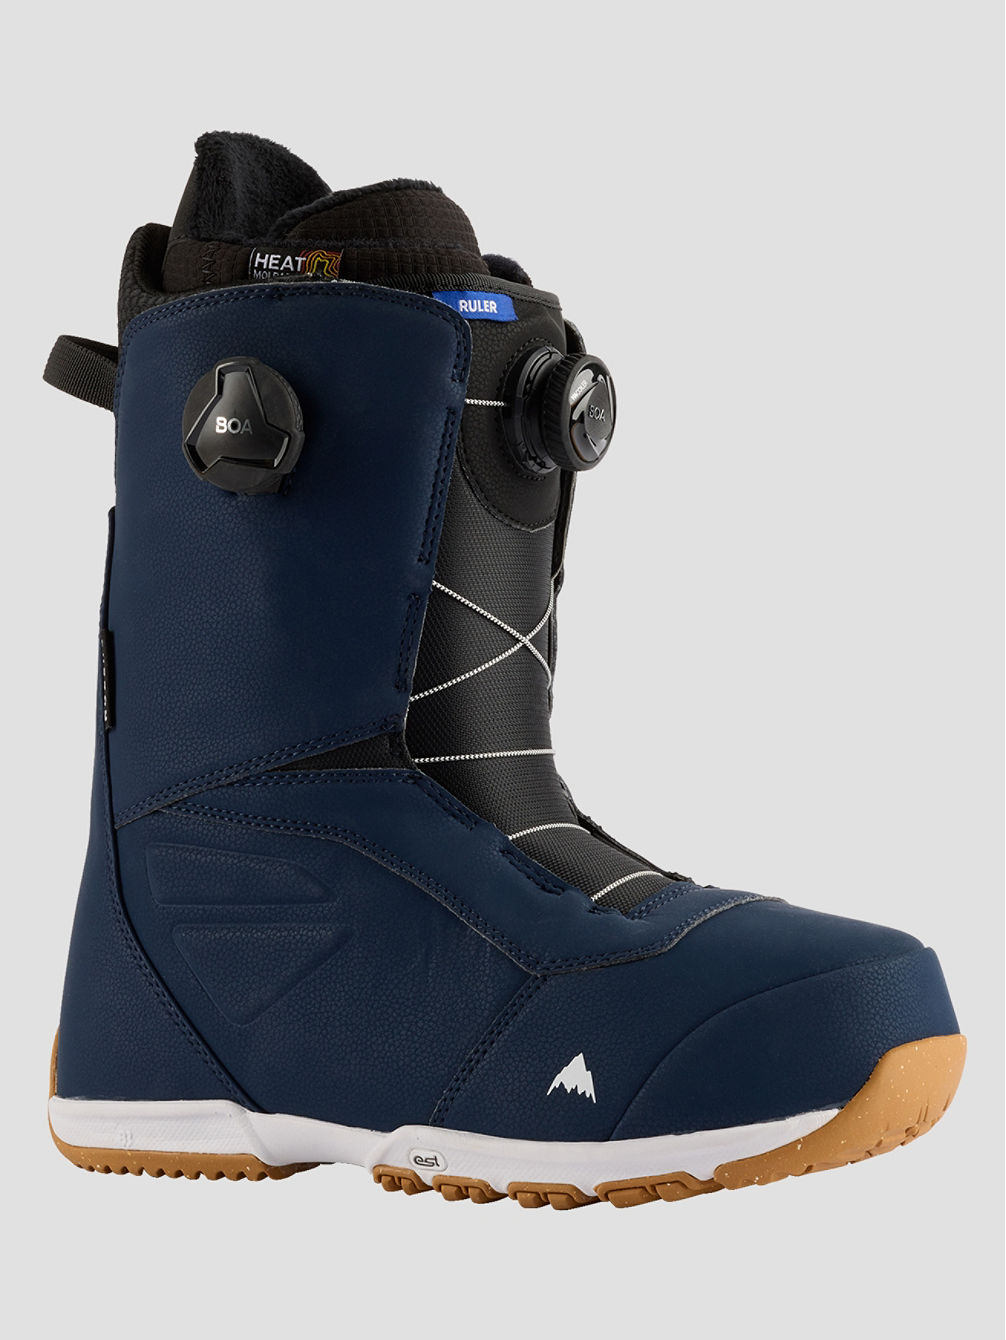 Ruler BOA 2023 Snowboard Boots